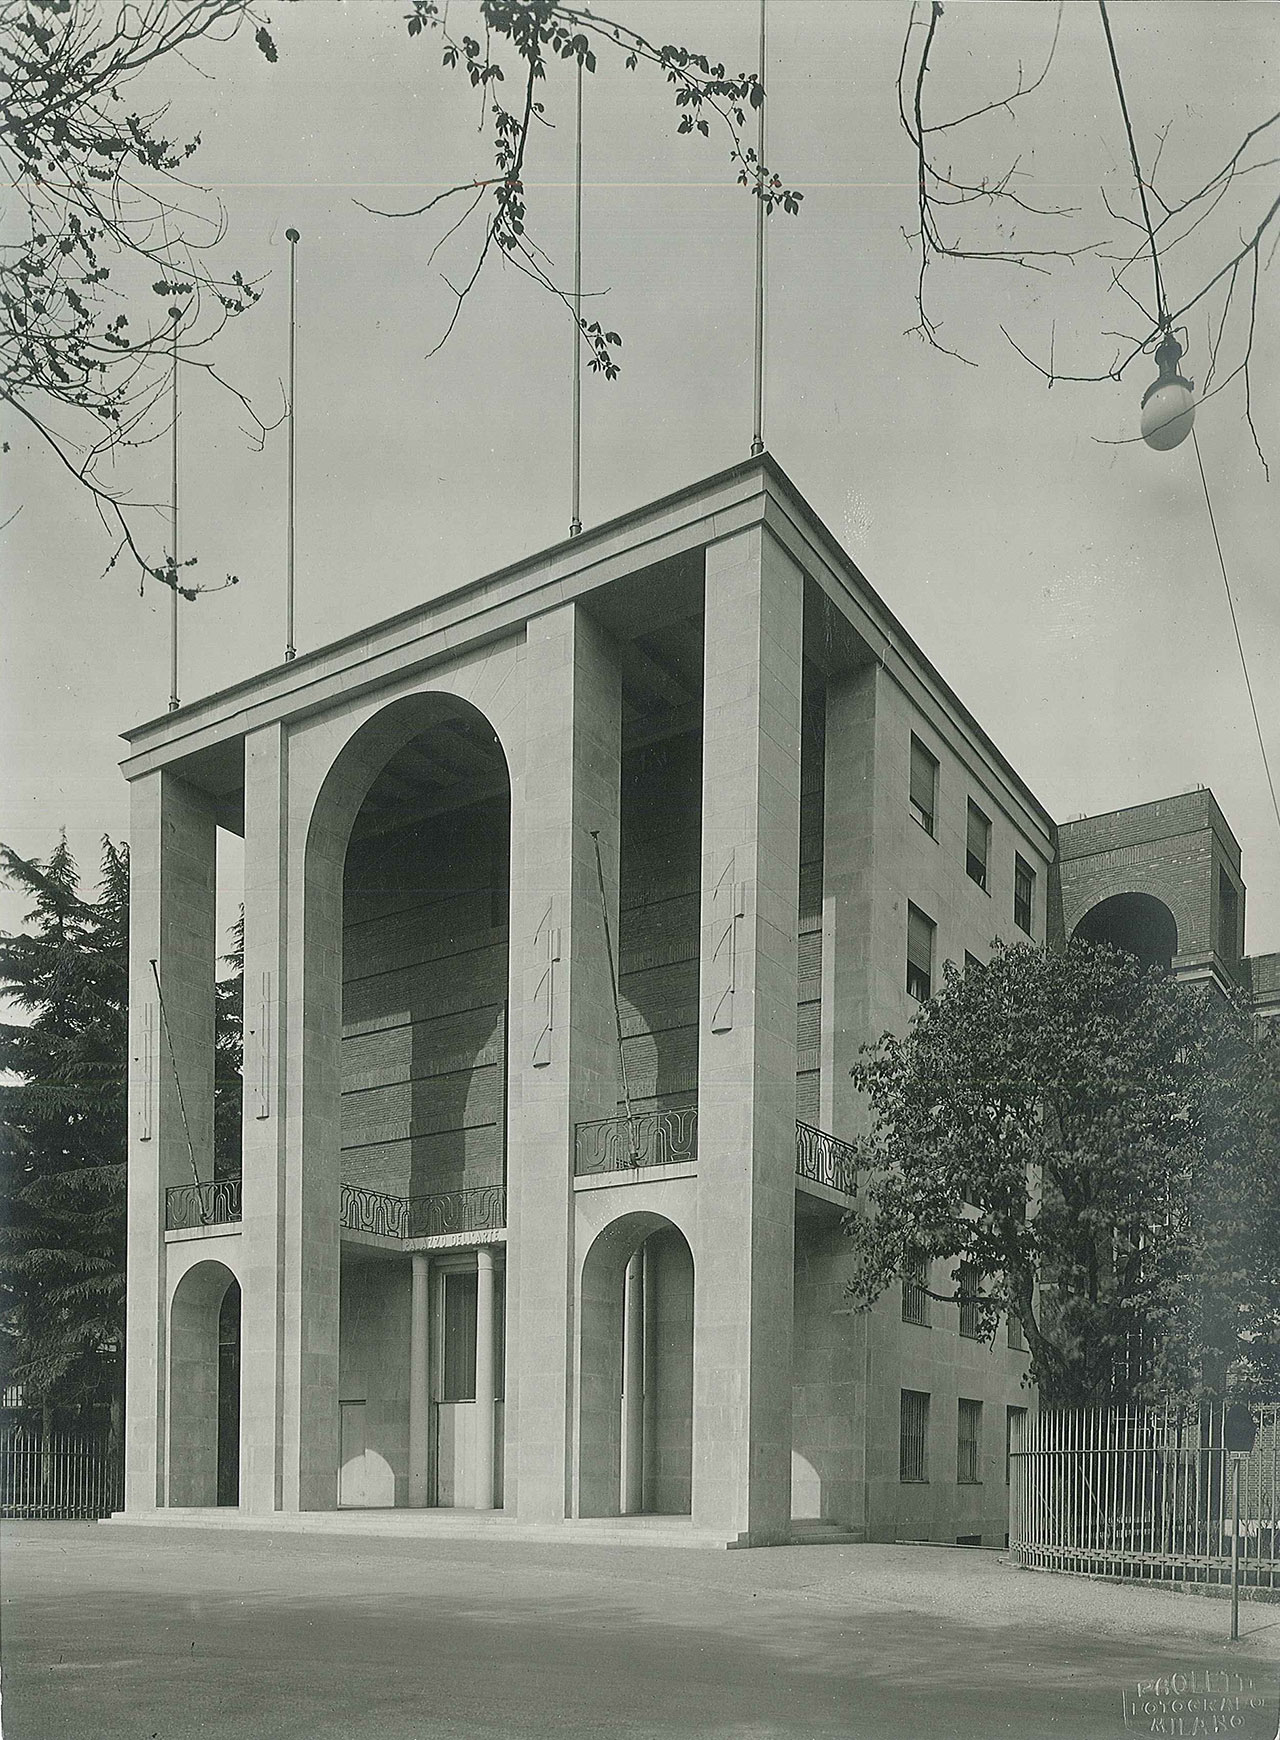 Giovanni Muzio, Palazzo dell'Arte (Fondazione Bernocchi), 1933. Photographic print, 16 x 22 cm. Photographic Studio A. Paoletti, Muzio archive © Muzio archive.